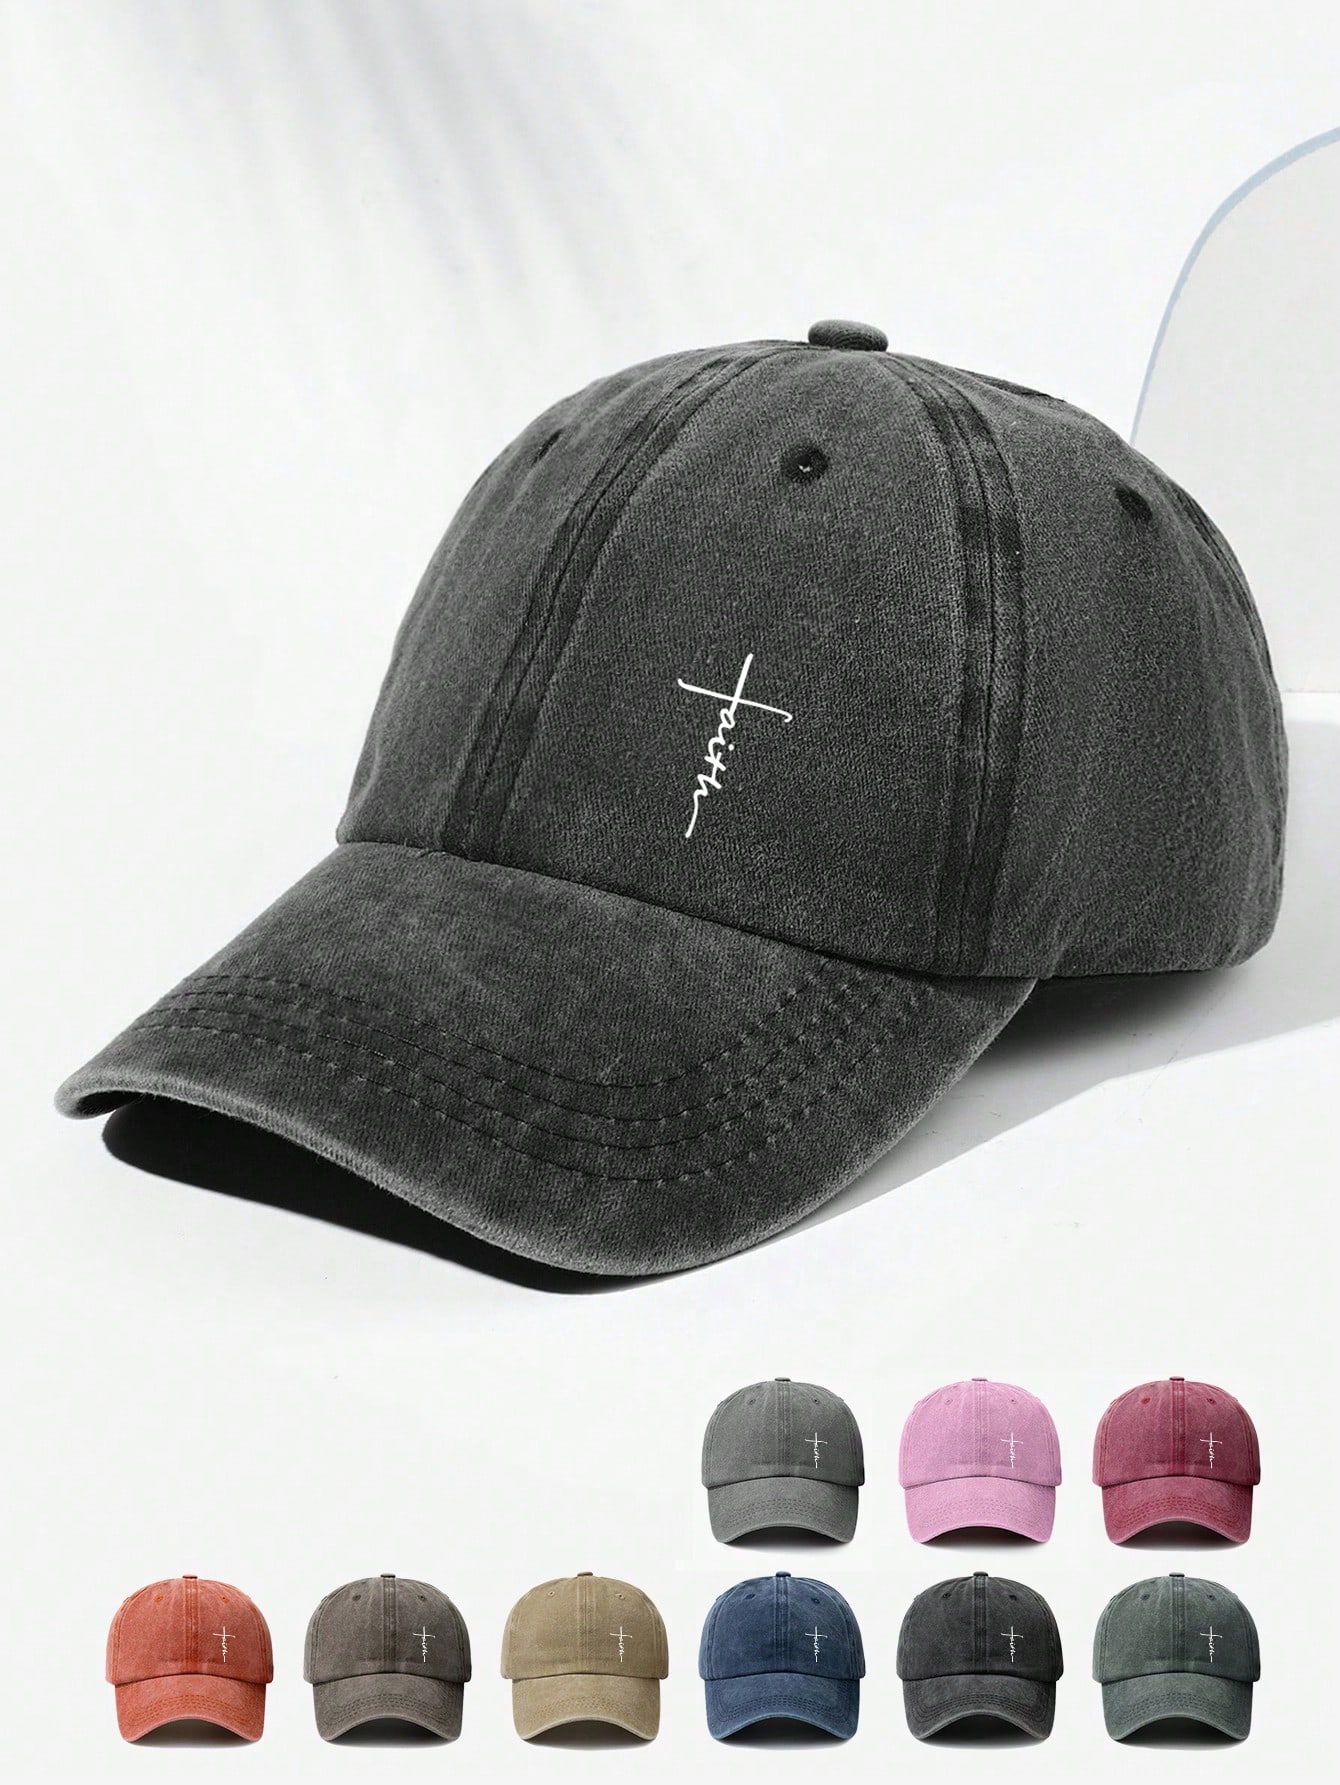 Винтажная бейсболка с принтом крестов унисекс модная шляпа для папы с регулируемой пряжкой для уличной и повседневной носки шапка миранда ламберта винтажная джинсовая бейсболка регулируемая унисекс